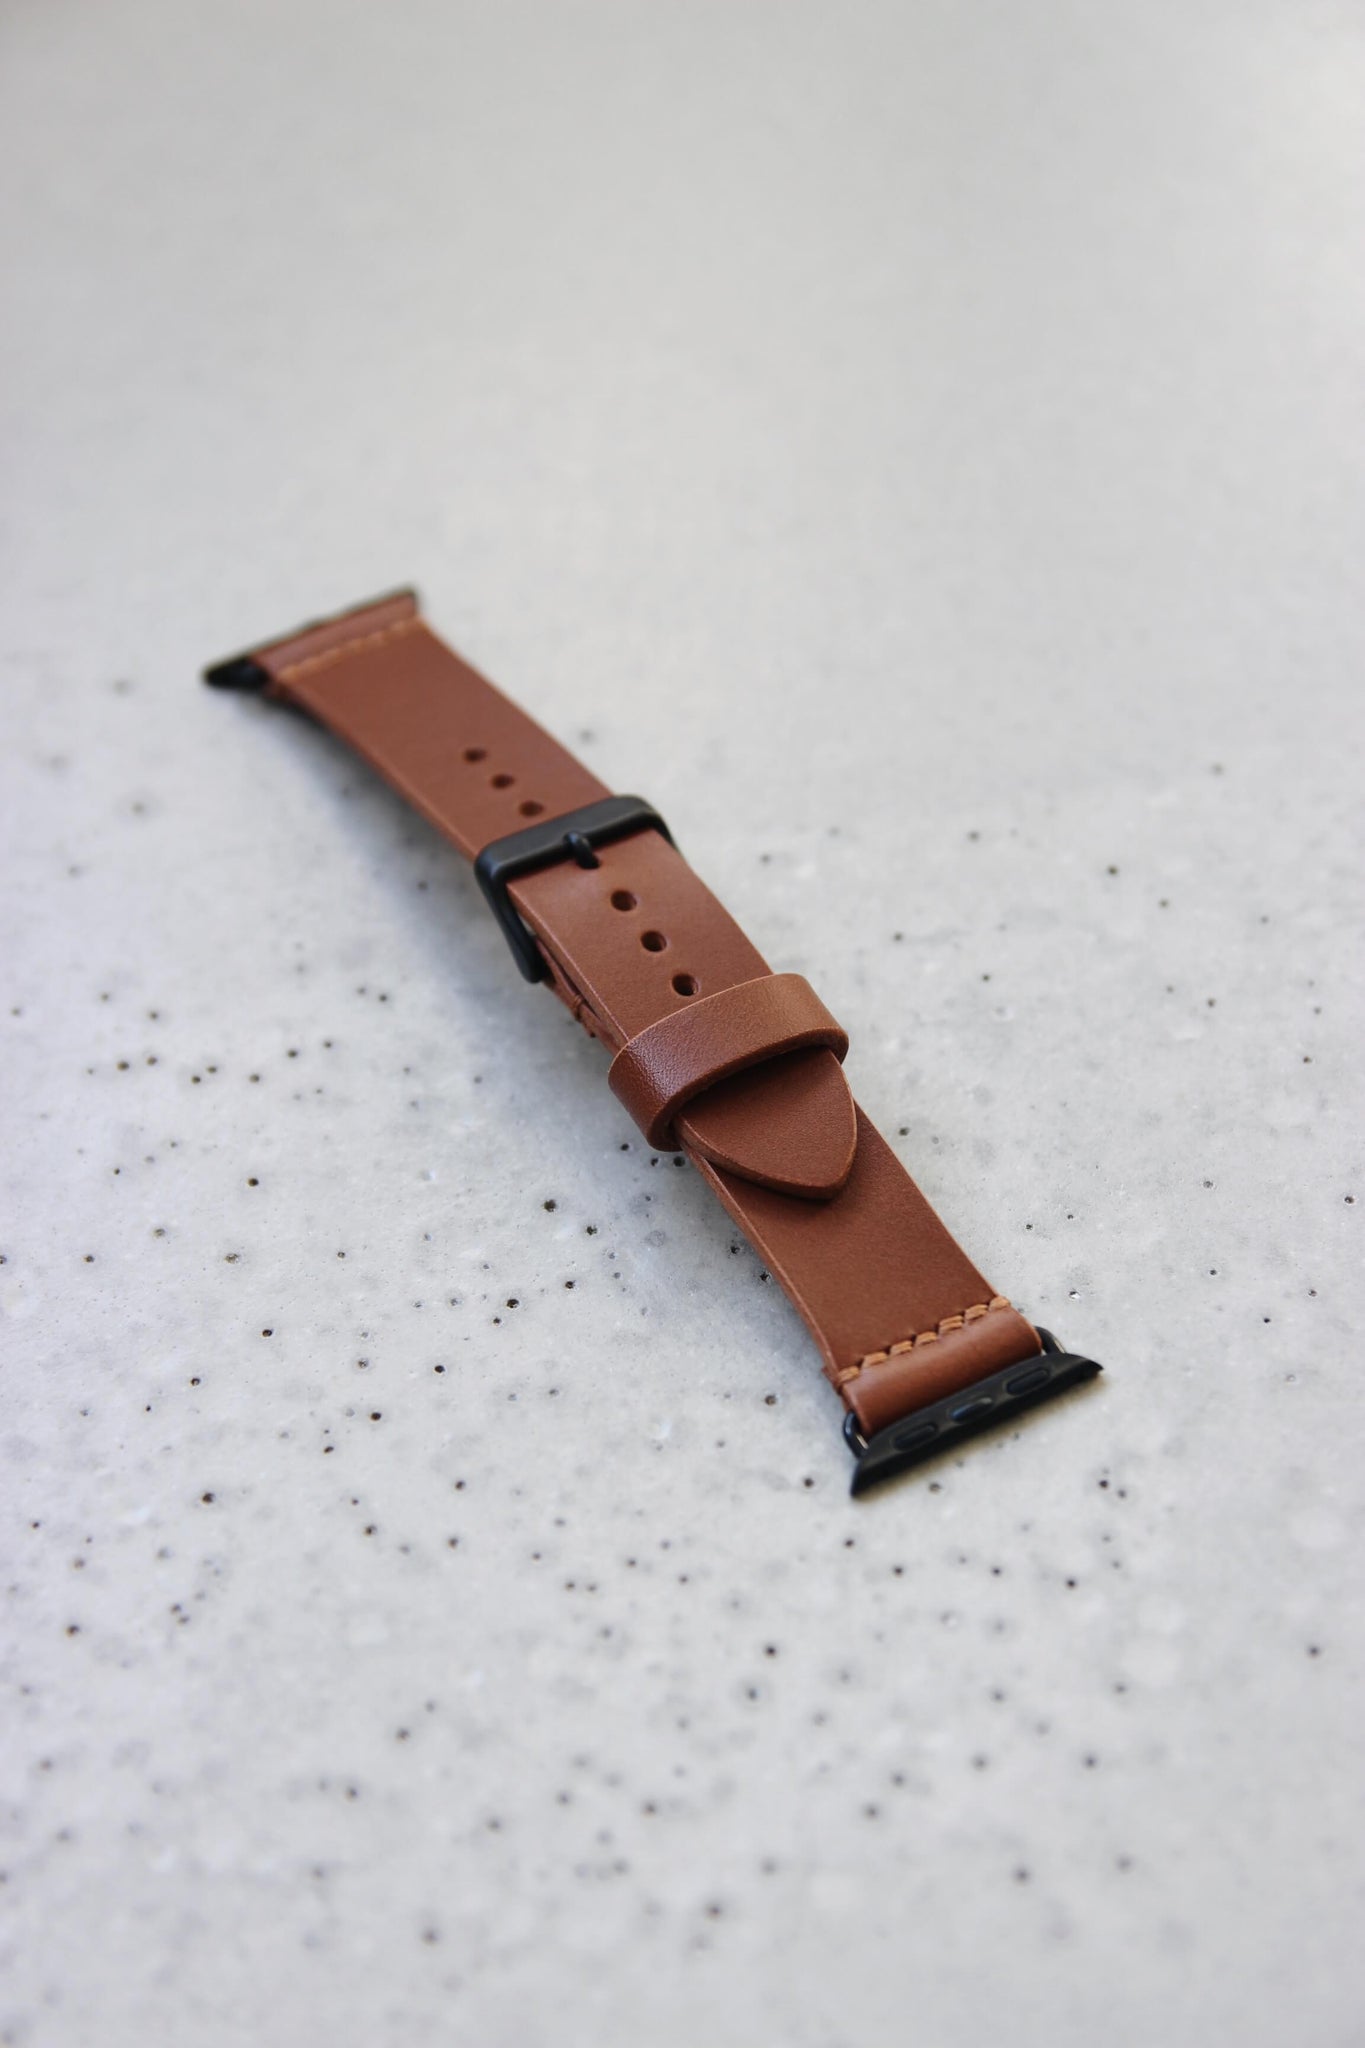 Apple Watch Lederband in Braun auf einem Betonboden liegend.